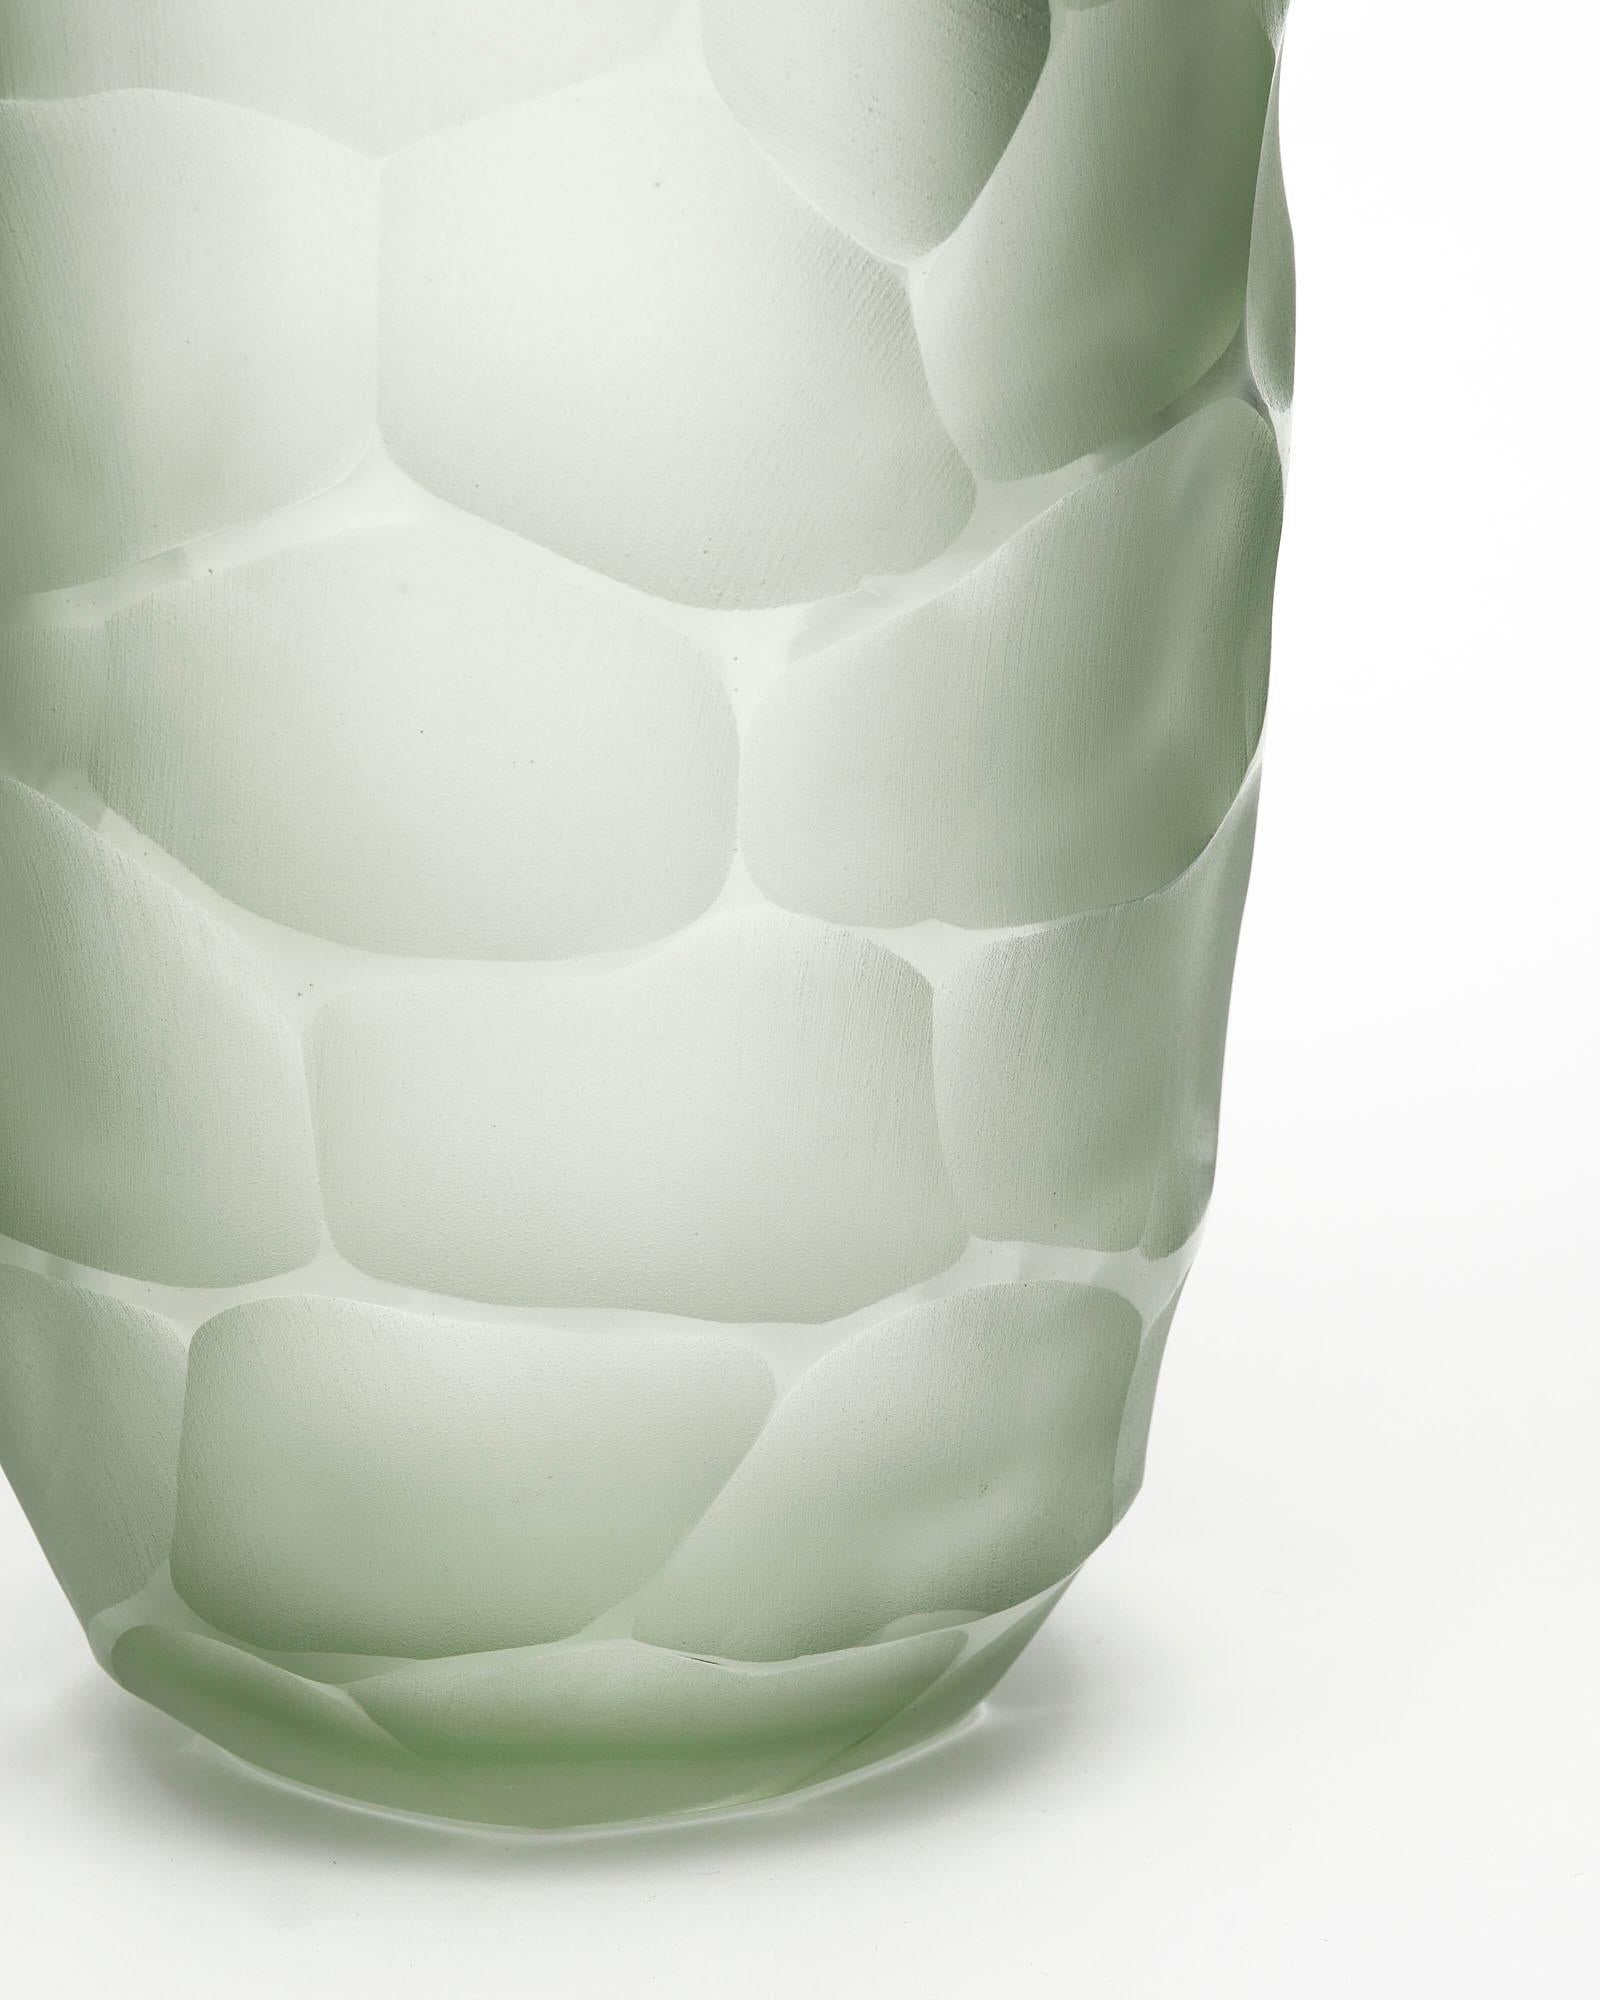 Contemporary Murano Glass “Battuto” Vases For Sale